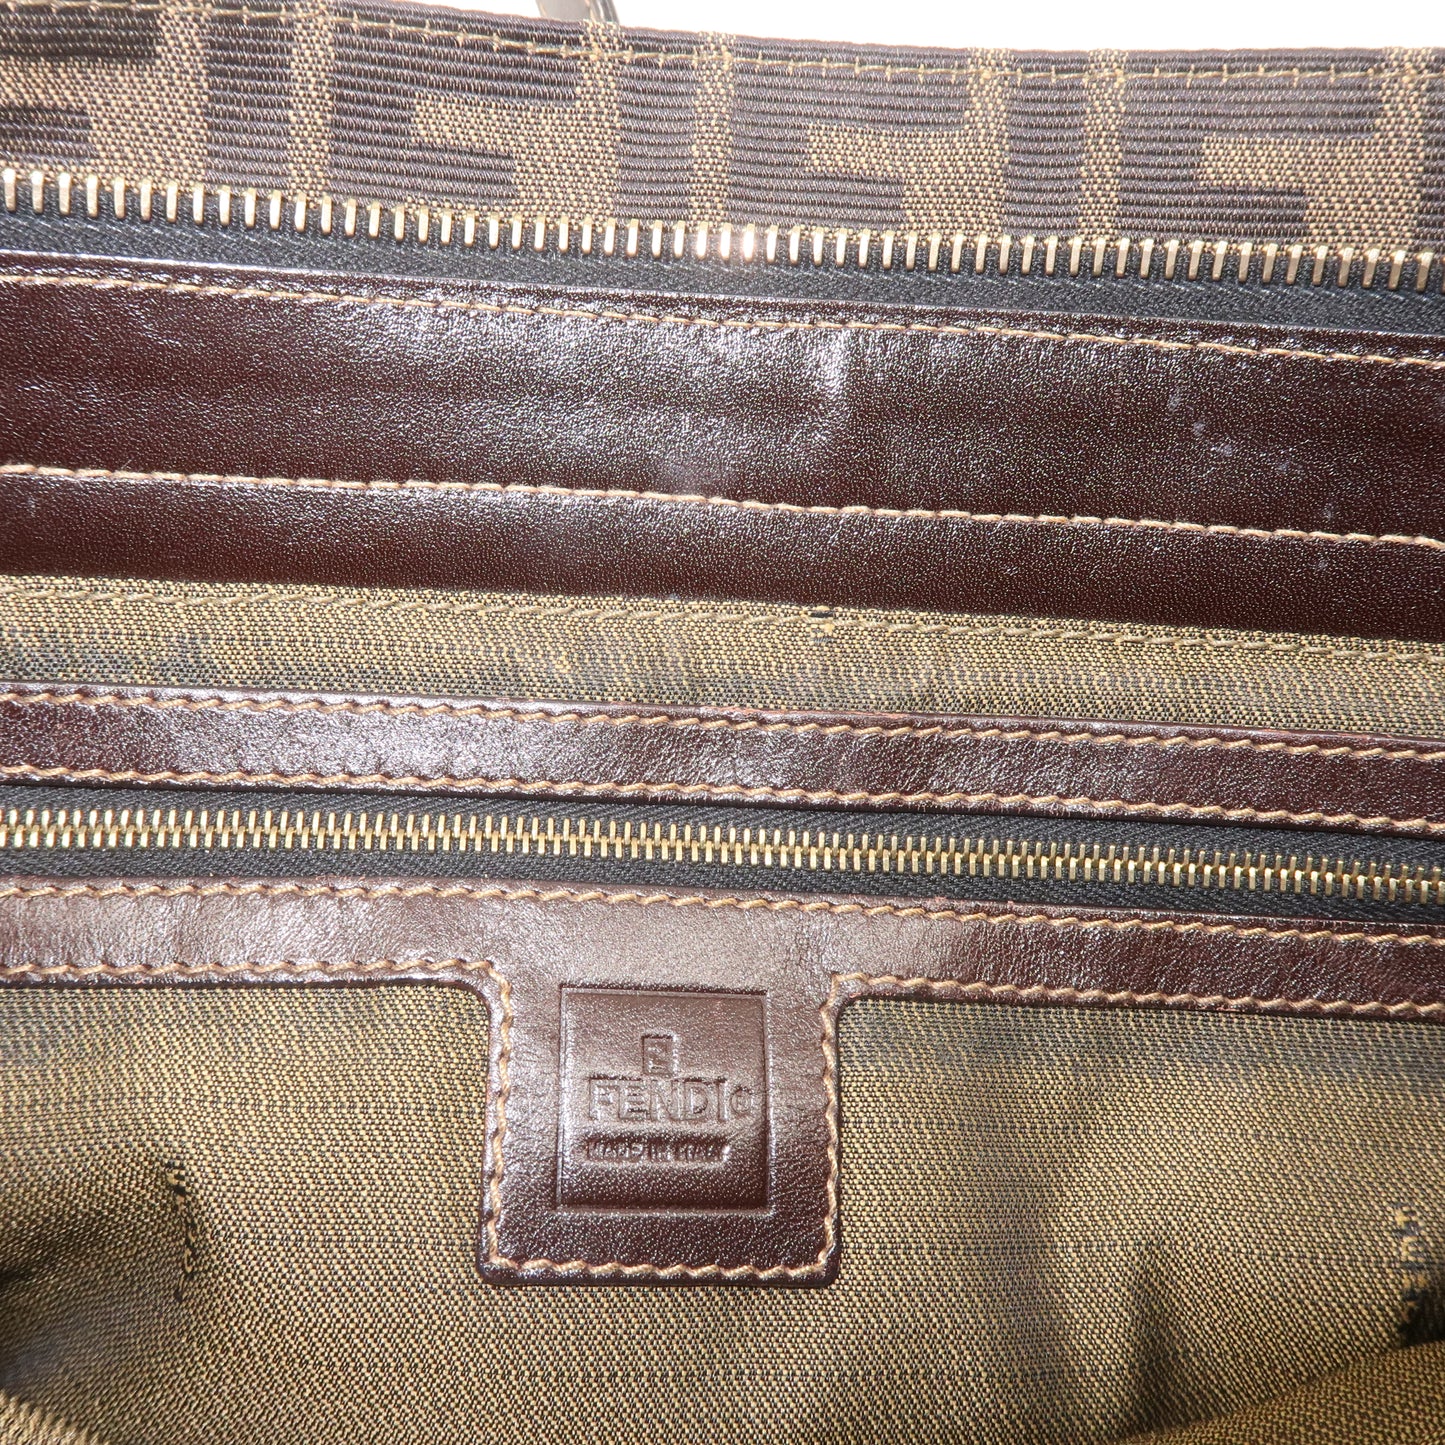 FENDI Zucca Canvas Leather Shoulder Bag Brown Black